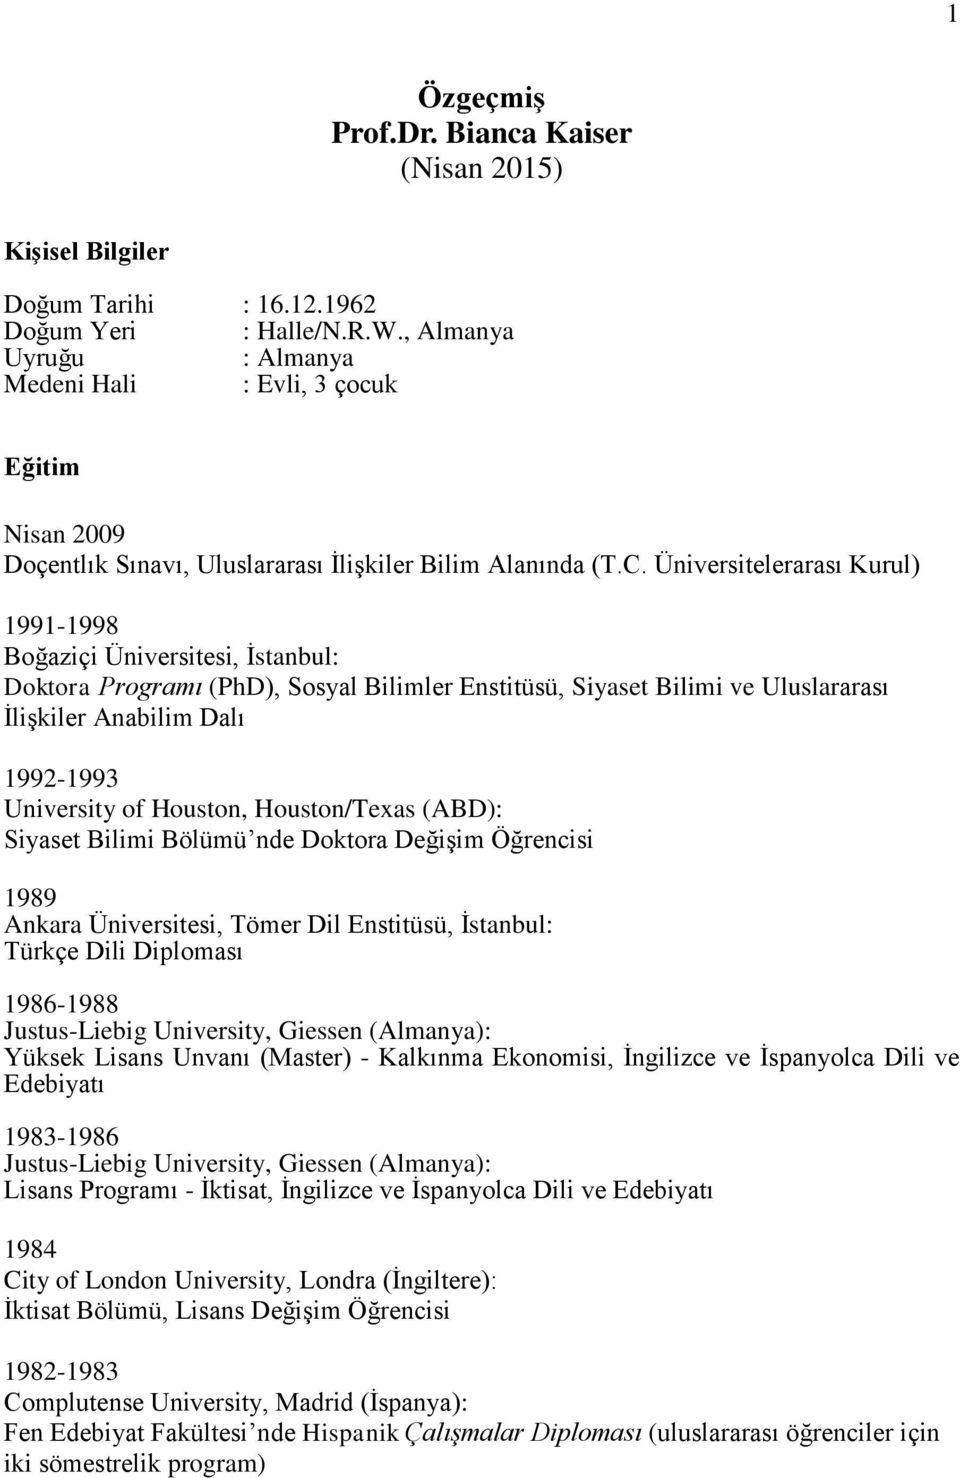 Üniversitelerarası Kurul) 1991-1998 Boğaziçi Üniversitesi, İstanbul: Doktora Programı (PhD), Sosyal Bilimler Enstitüsü, Siyaset Bilimi ve Uluslararası İlişkiler Anabilim Dalı 1992-1993 University of